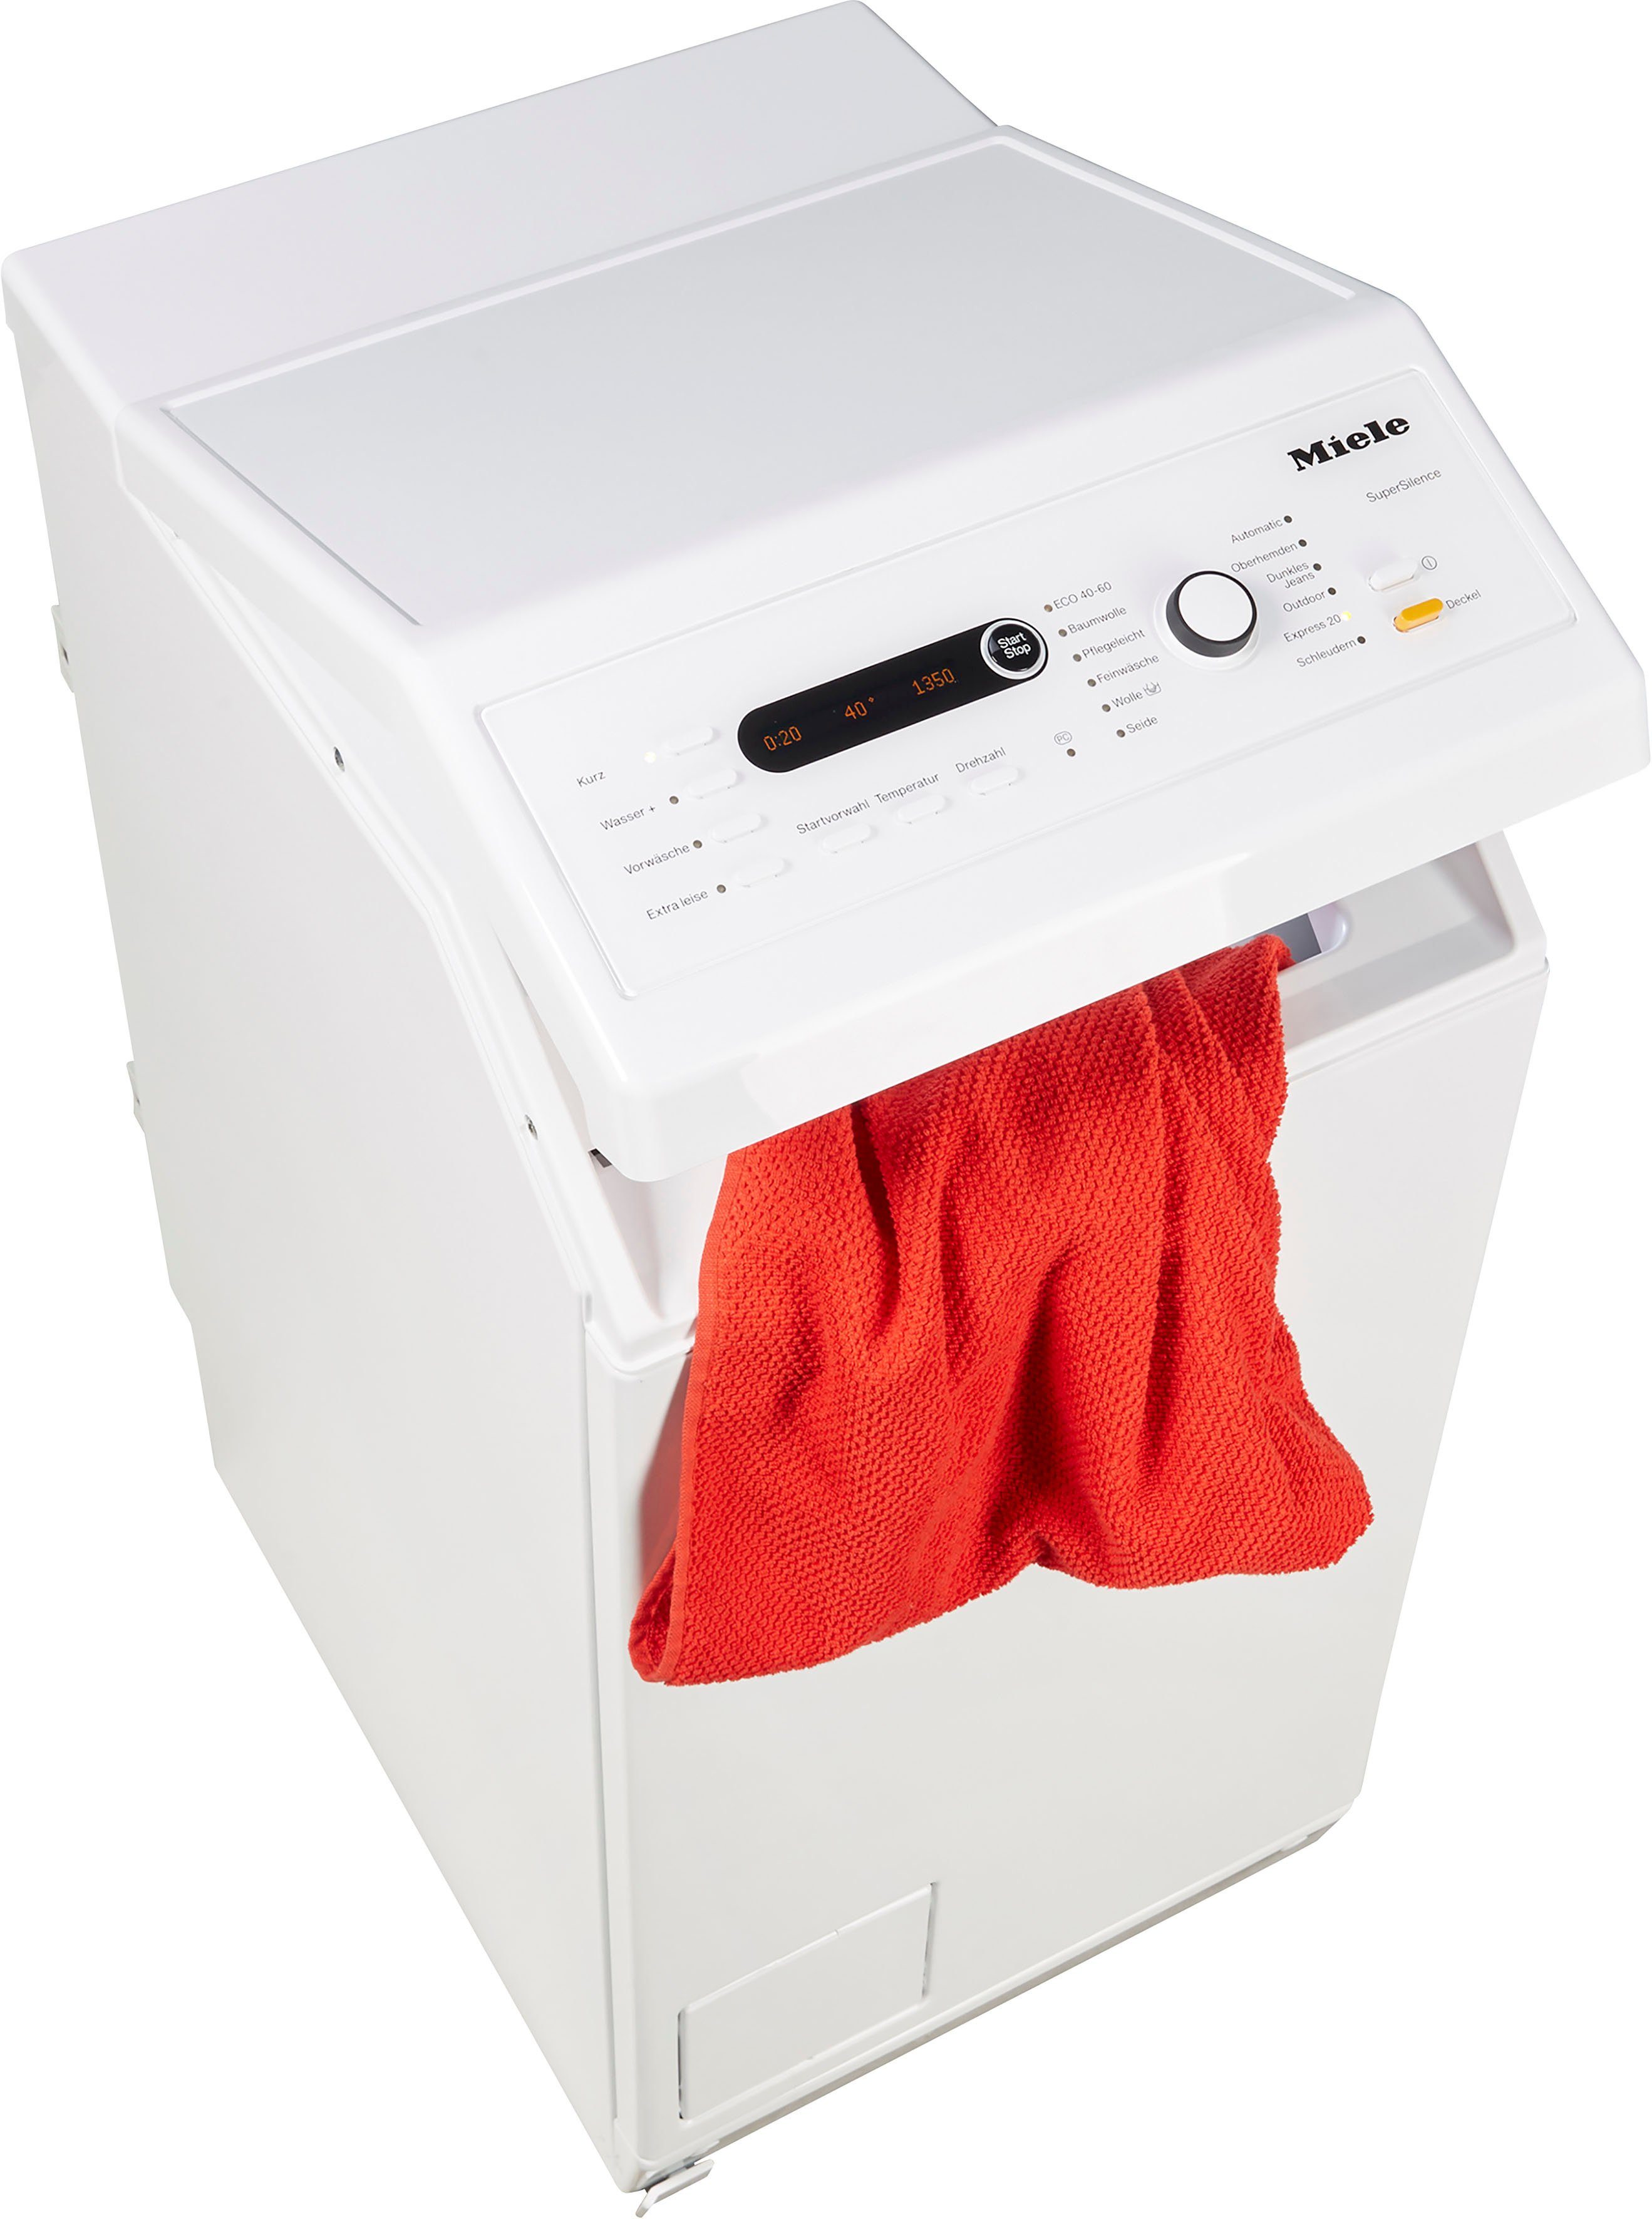 Miele Waschmaschine Toplader WW690 WPM, 6 kg, 1300 U/min